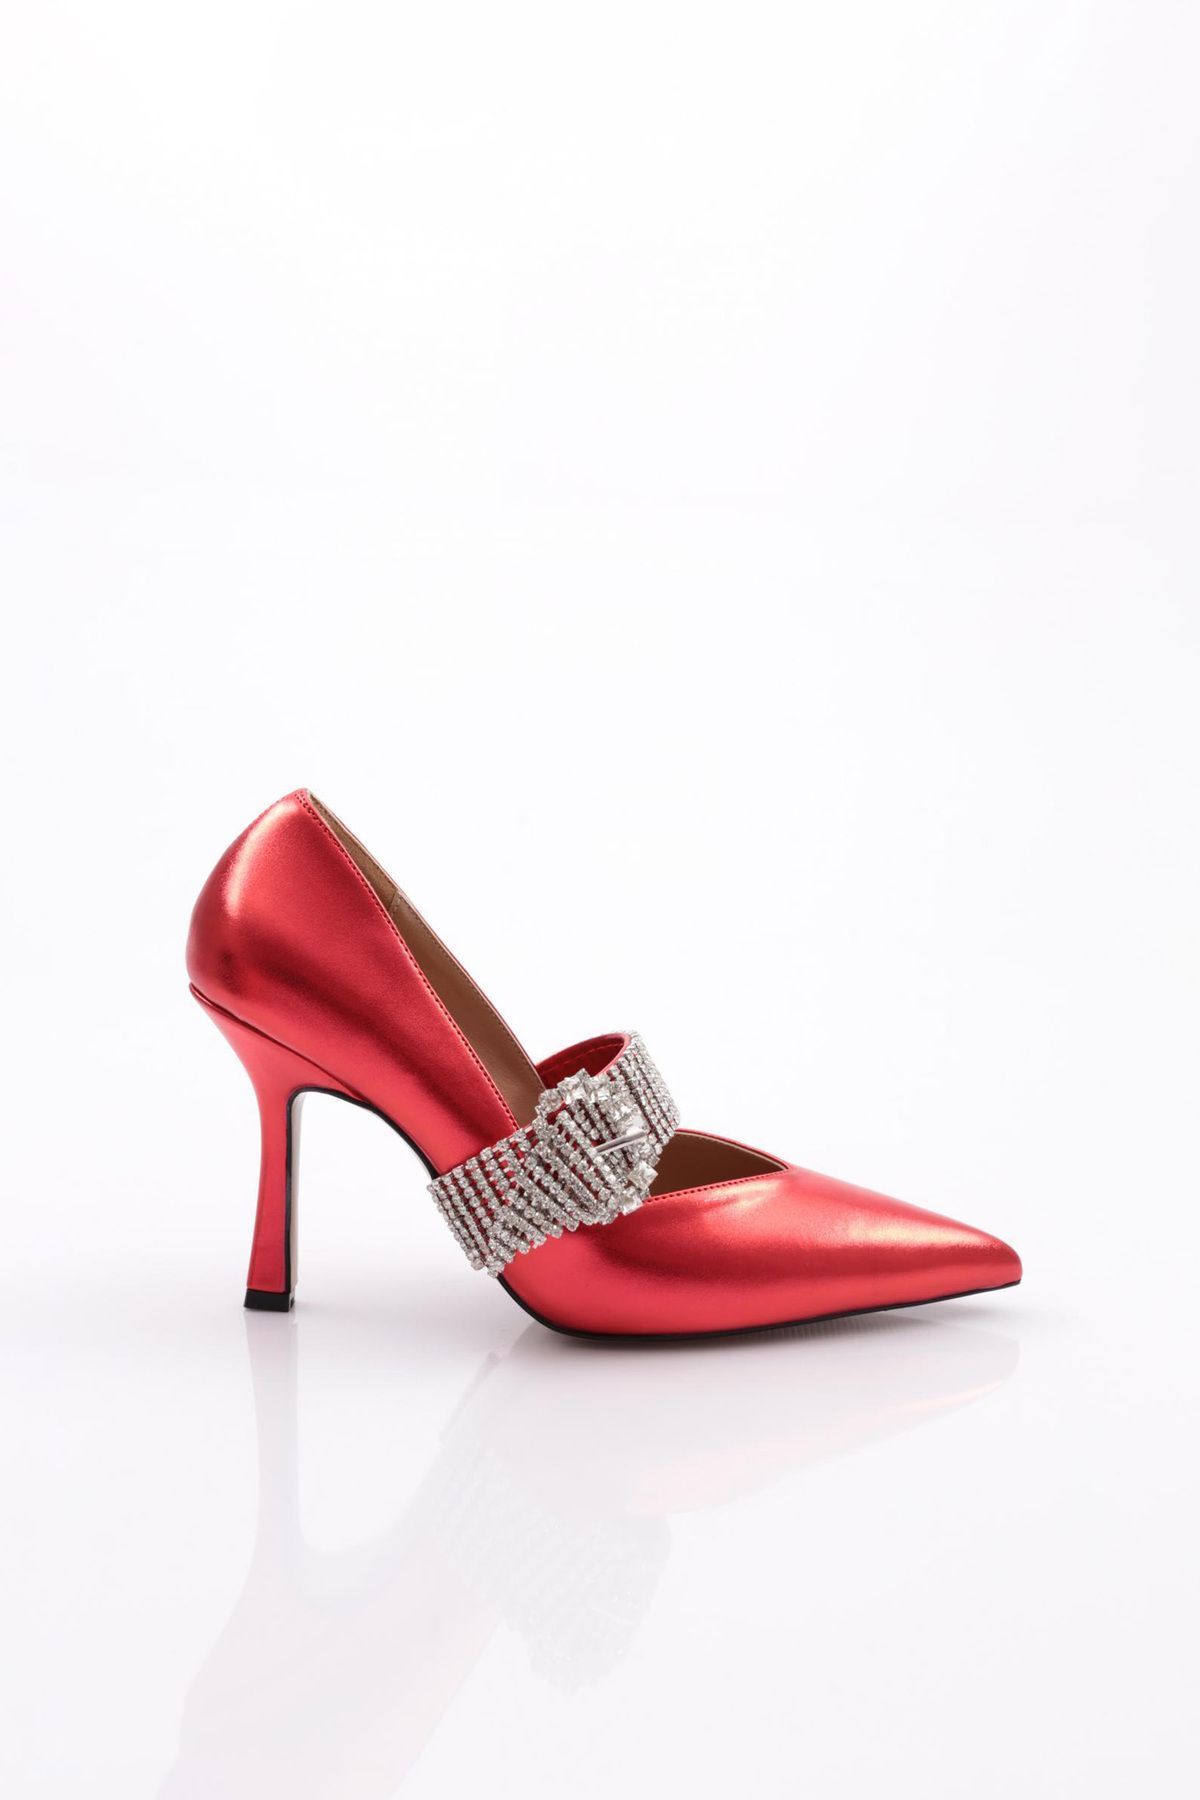 Dgn 5100 Kadın Taşlı Kemer Tokalı Abiye Topuklu Ayakkabı Kırmızı Metalik